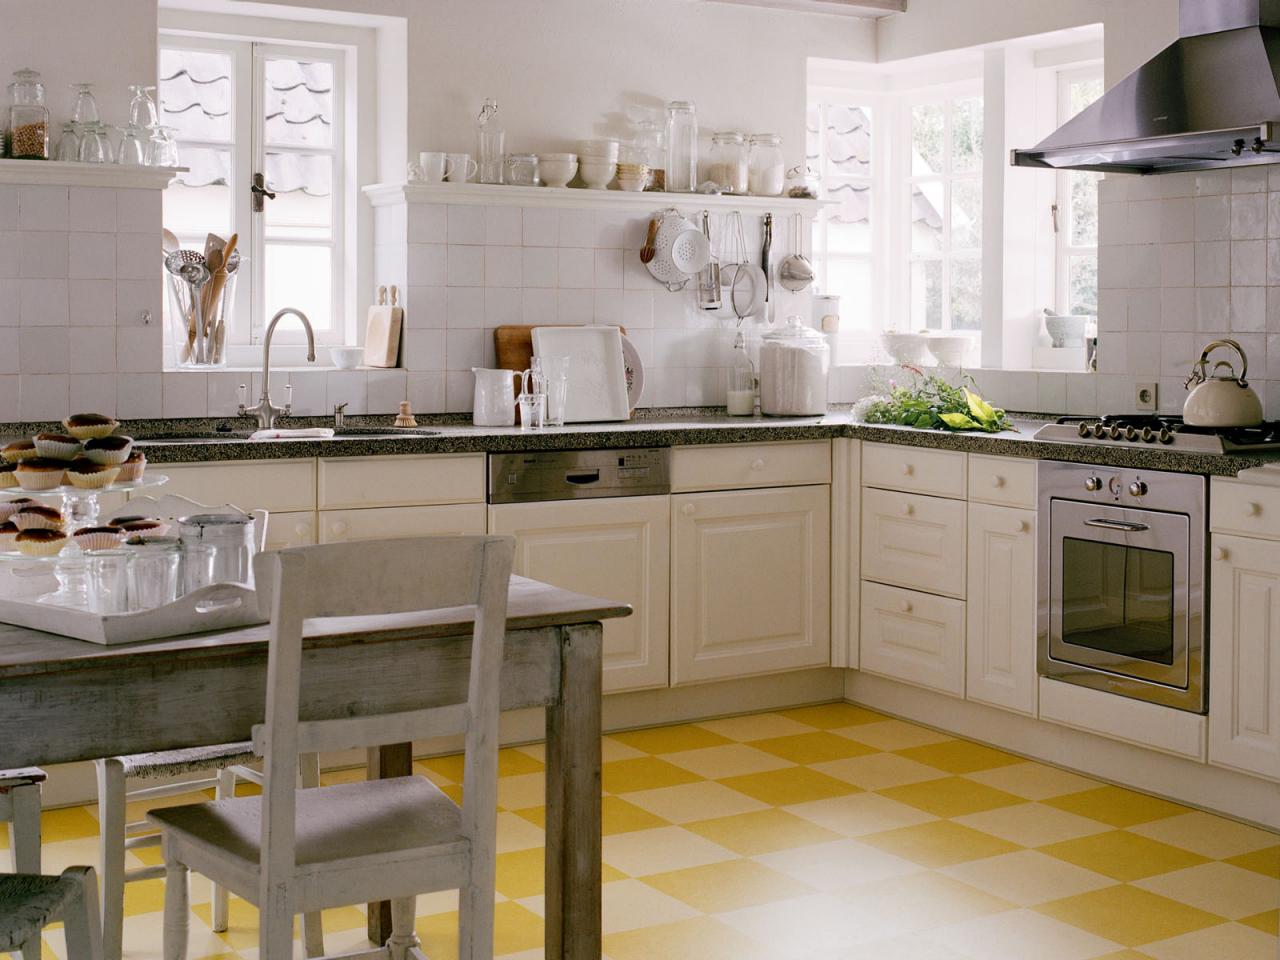 Linoleum Flooring In The Kitchen, Kitchen Vinyl Floor Tiles Designs